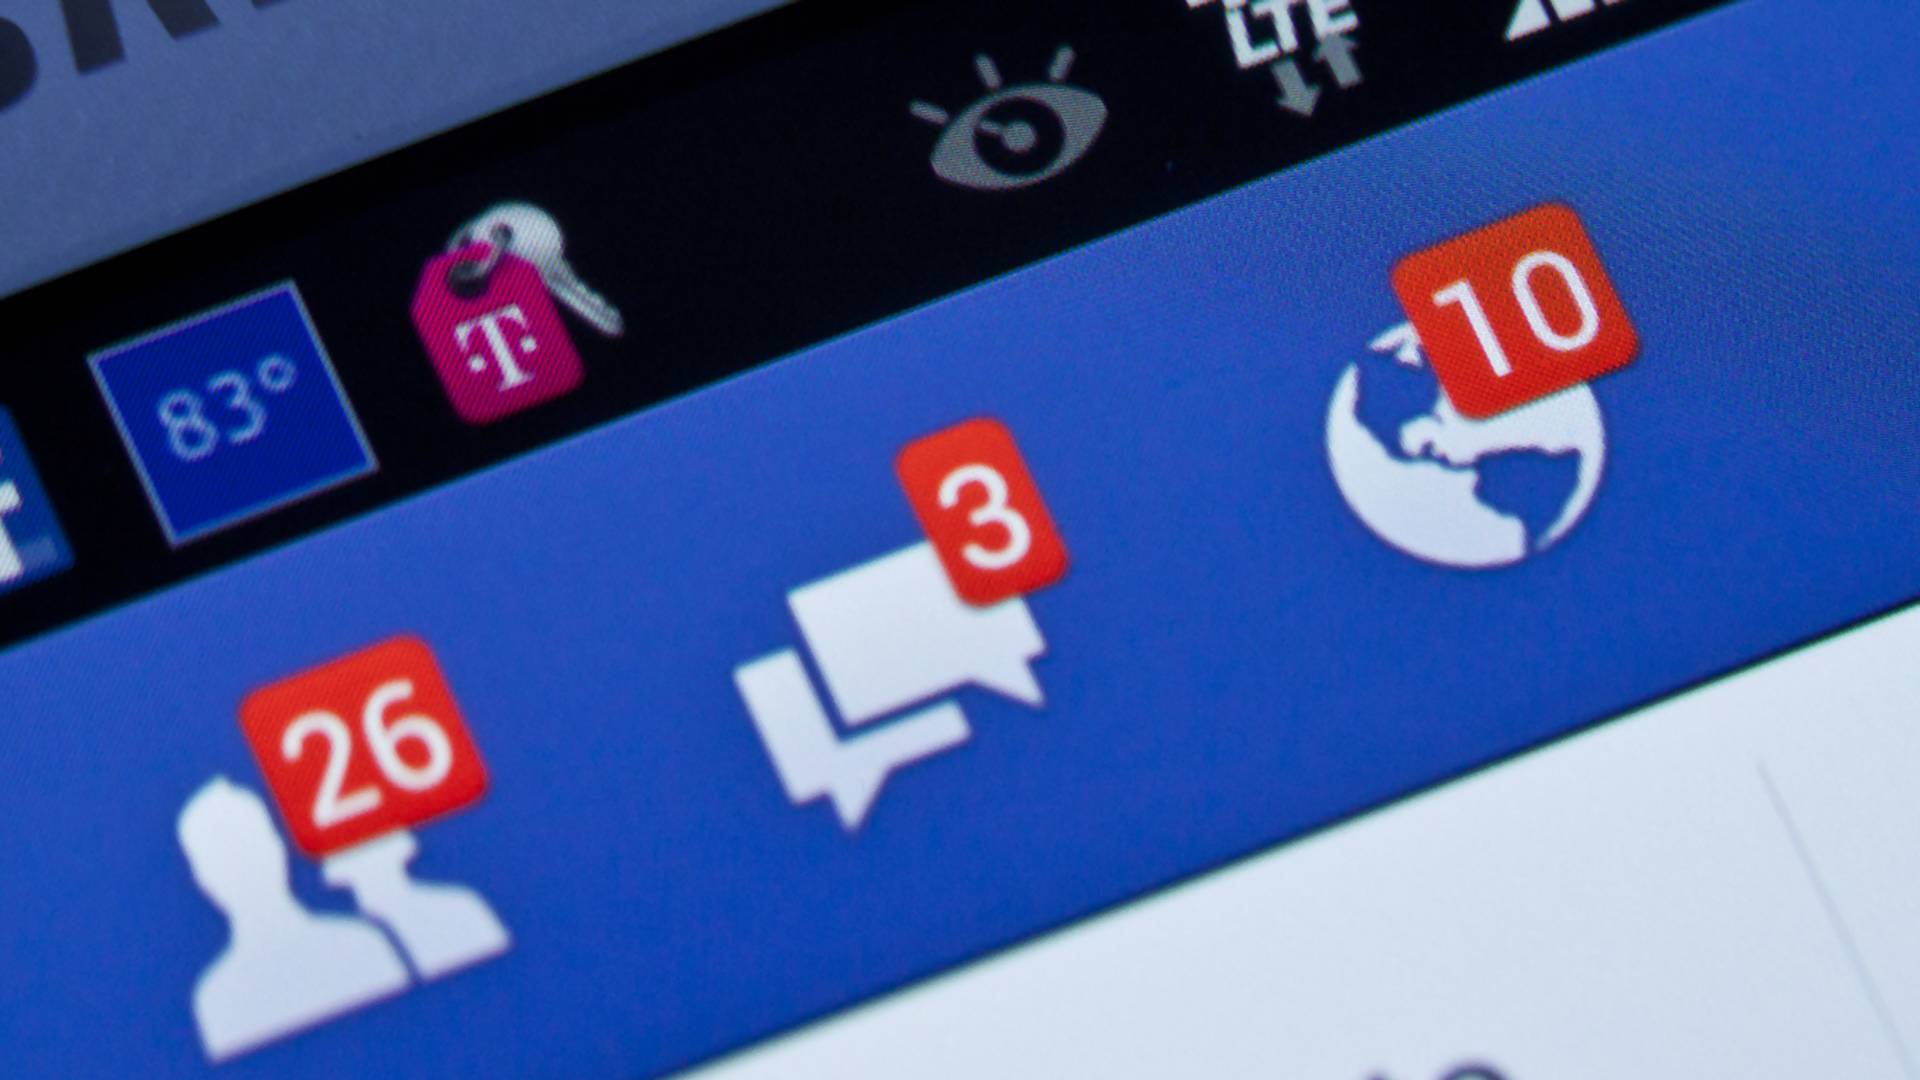 Czterema klikami możesz sprawdzić, czy ktoś niepowołany loguje się do twojego Facebooka